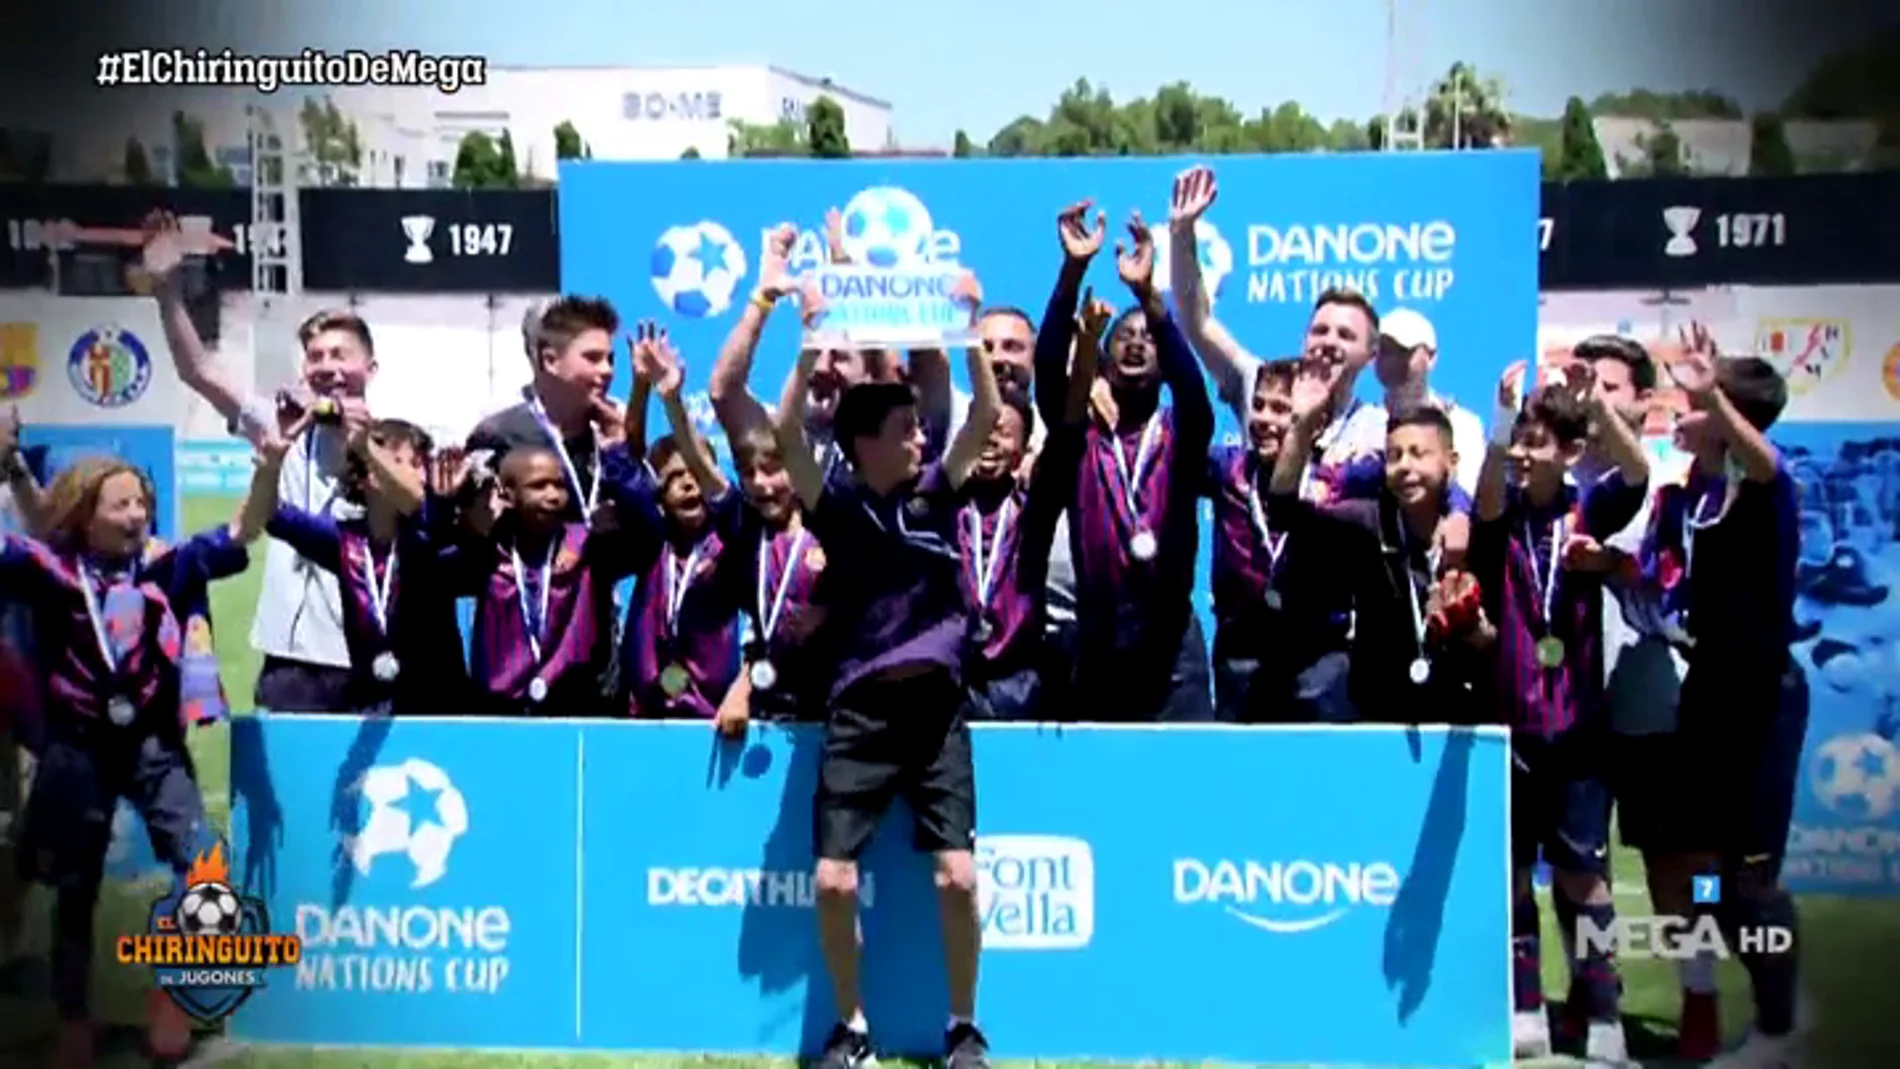 Fútbol, ilusión y el deporte con valores en la final mundial de la Danone Nations Cup 